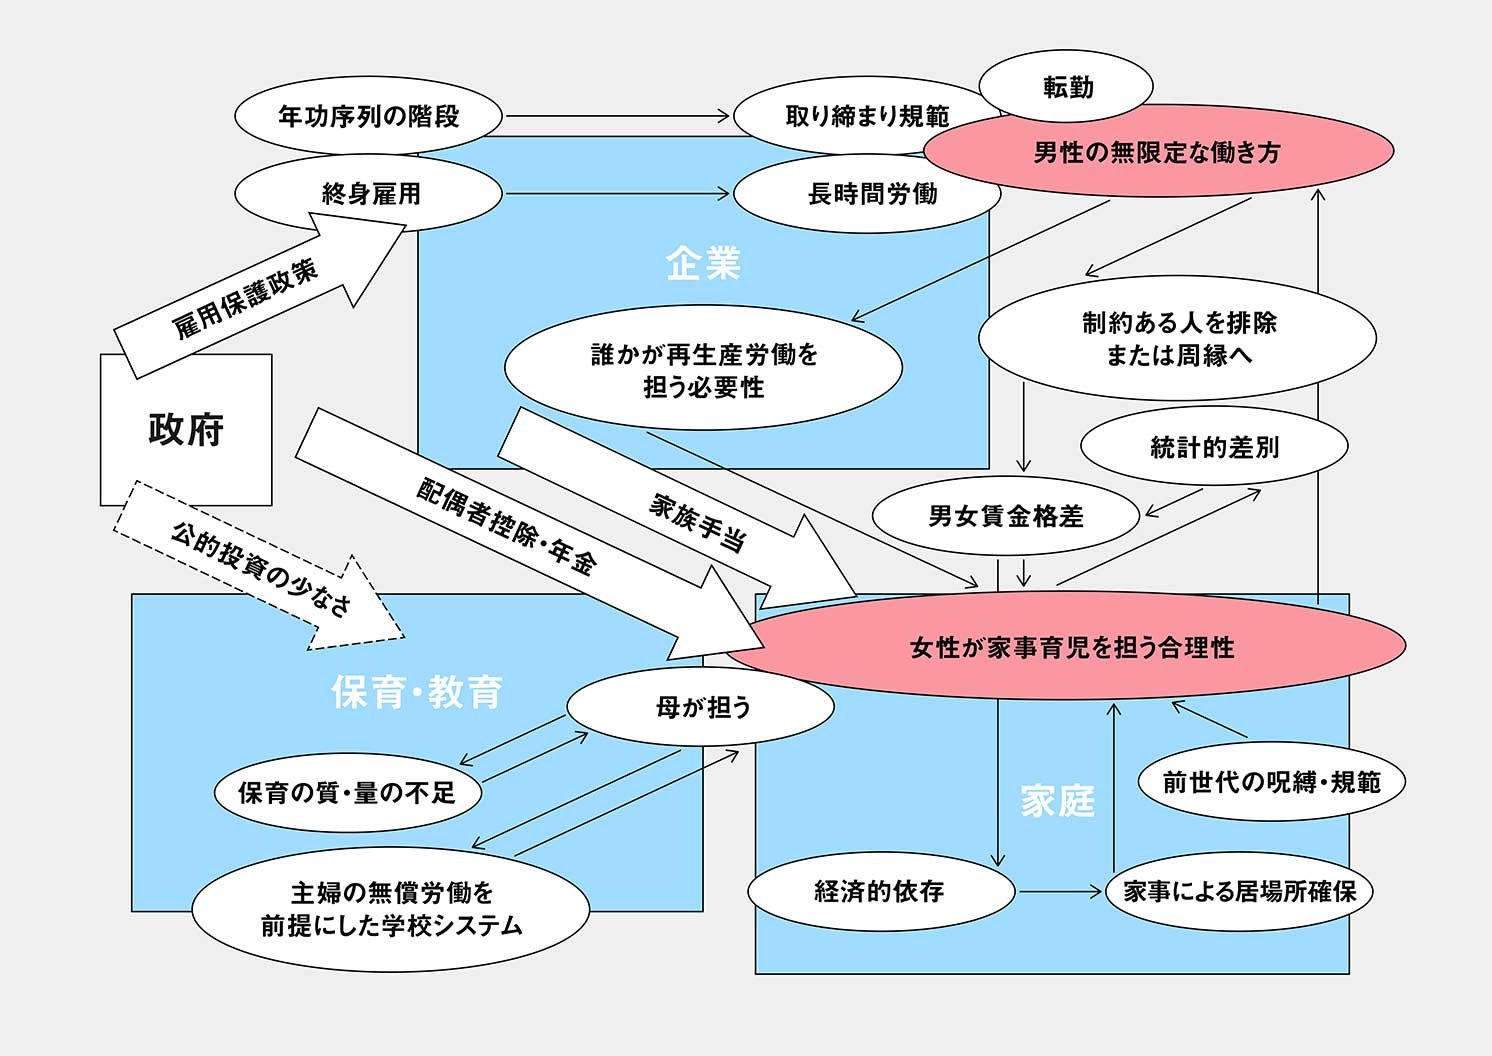 日本の「専業主婦家庭を前提とした働き方」の図 | Make New Magazine「未来の定番」をつくるために、パナソニックのリアルな姿を伝えるメディア